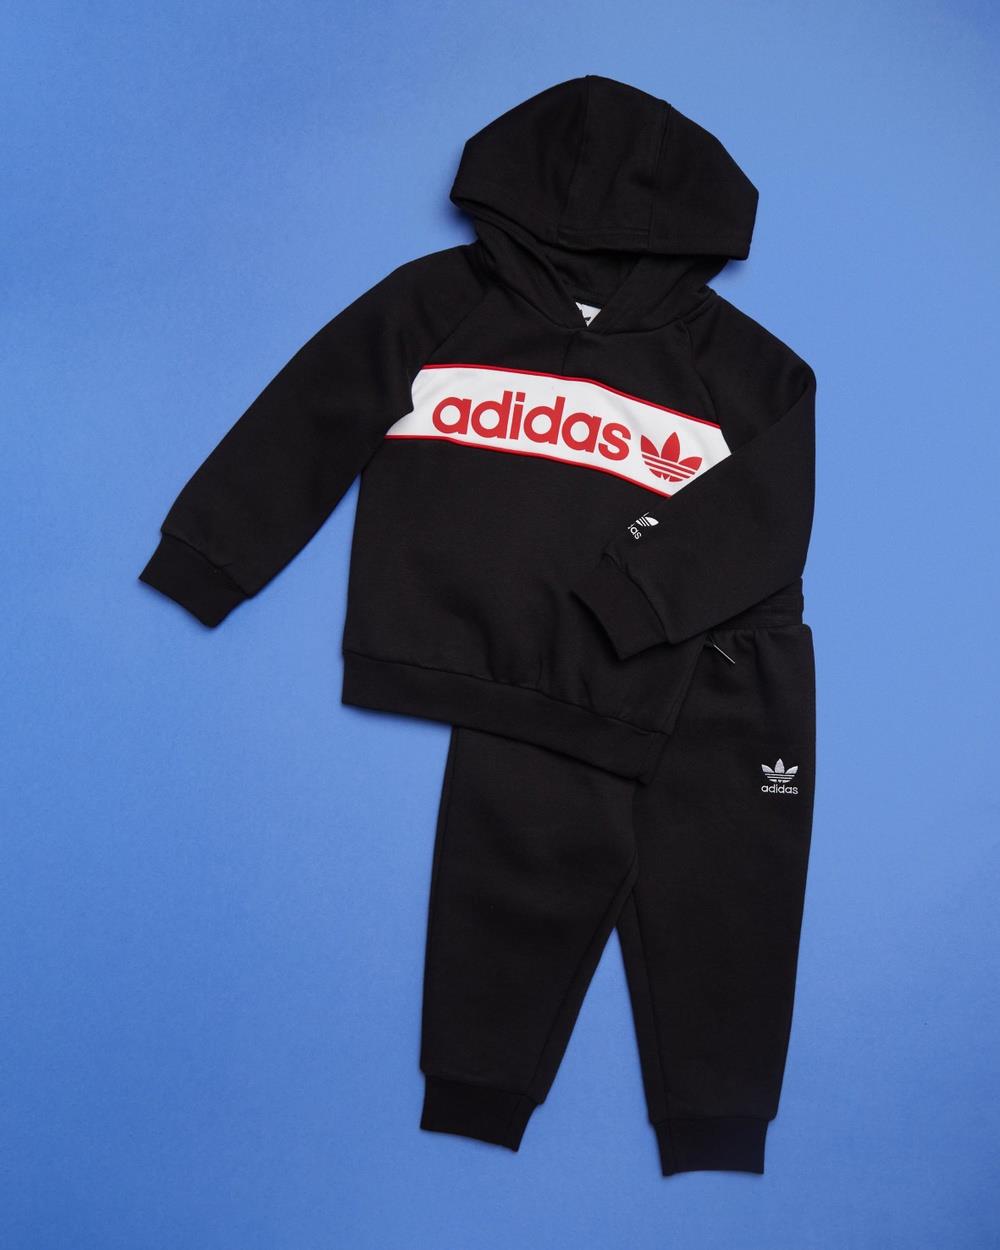 adidas Originals - Hoodie Set Babies Kids - Trackwear Sets (Black & Better Scarlet) Hoodie Set - Babies-Kids